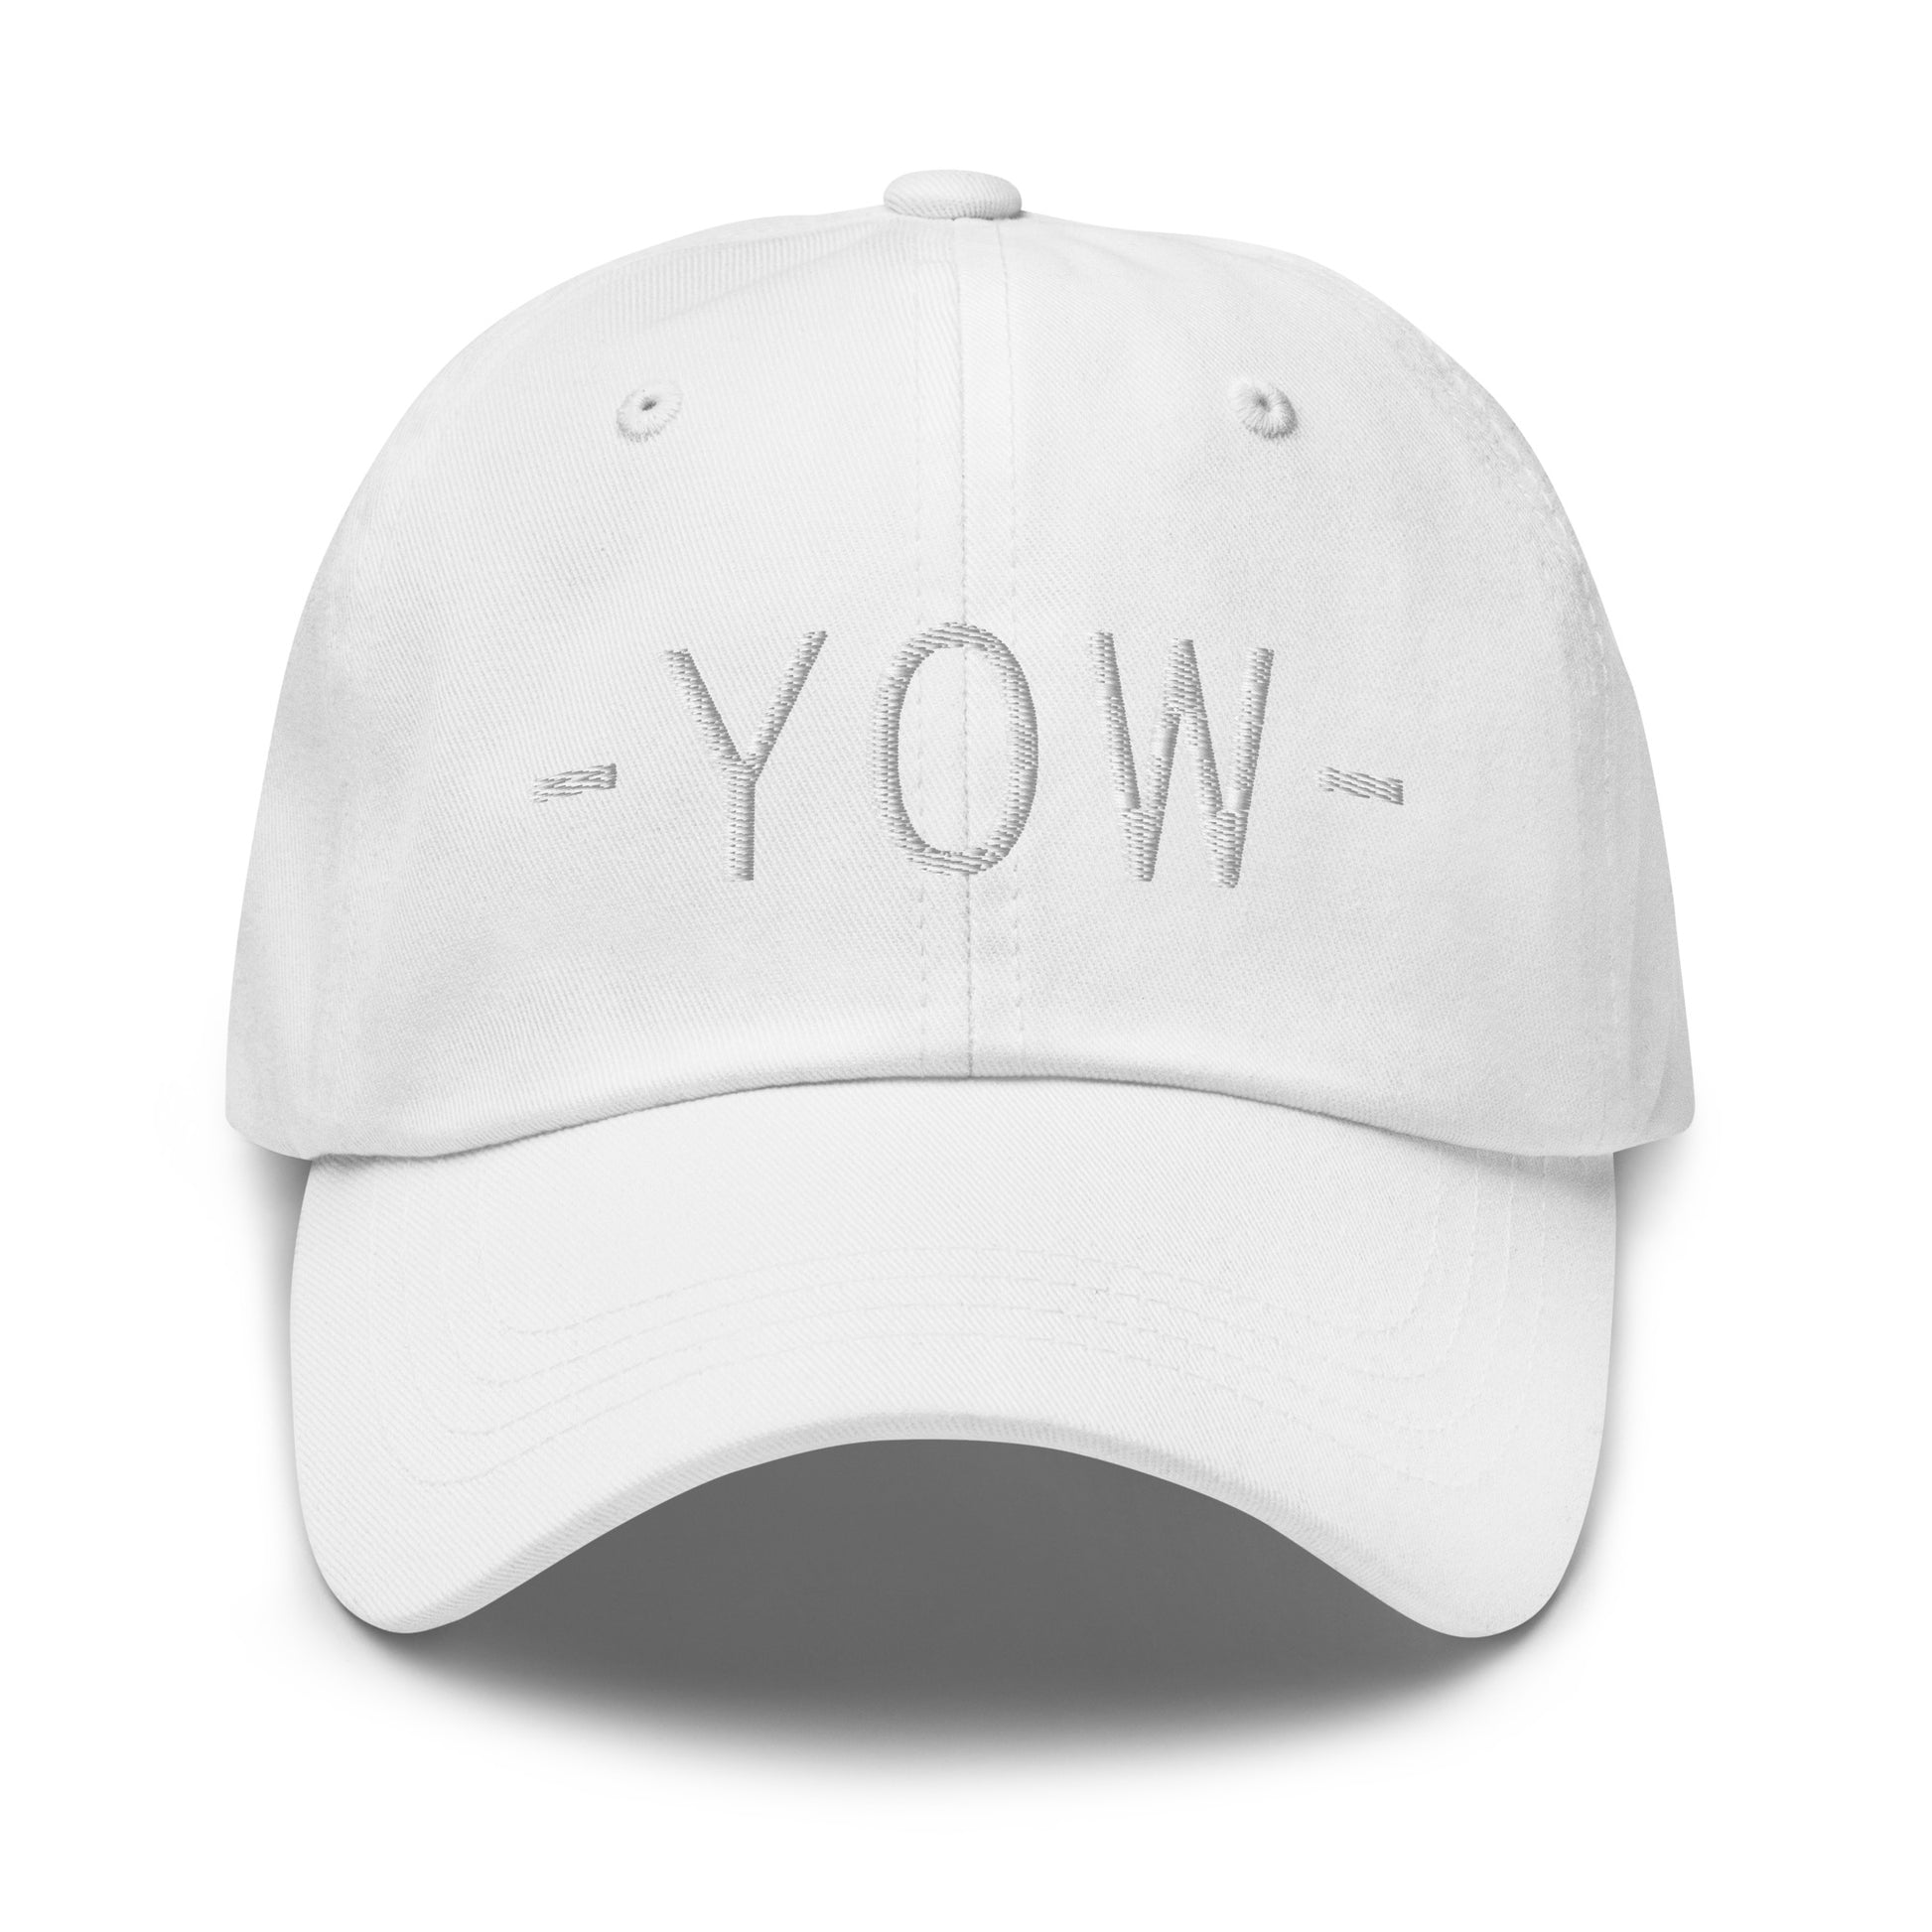 Souvenir Baseball Cap - White • YOW Ottawa • YHM Designs - Image 29